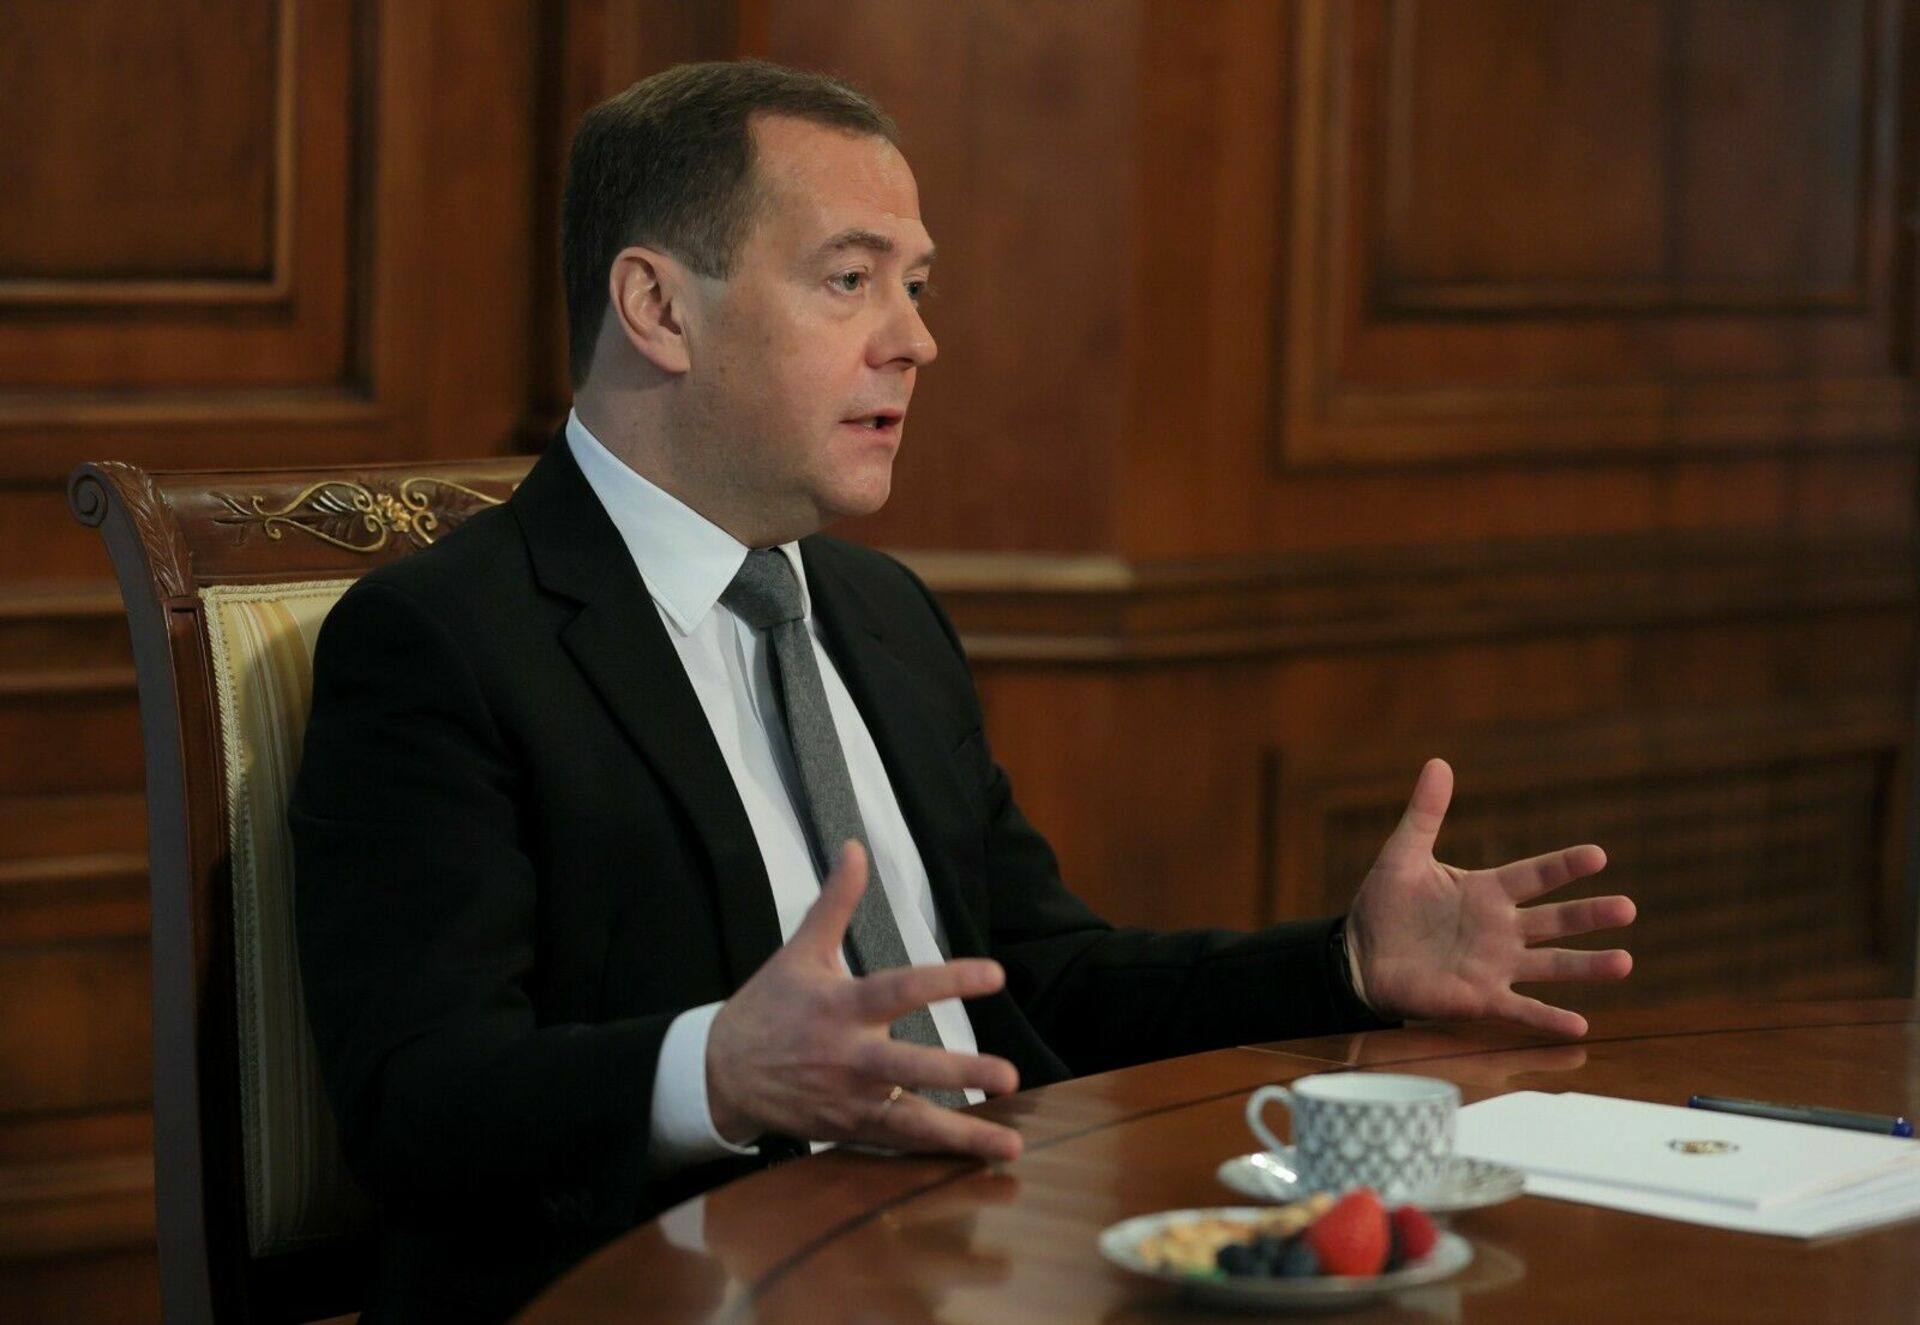 Интервью российским сми дмитрия медведева